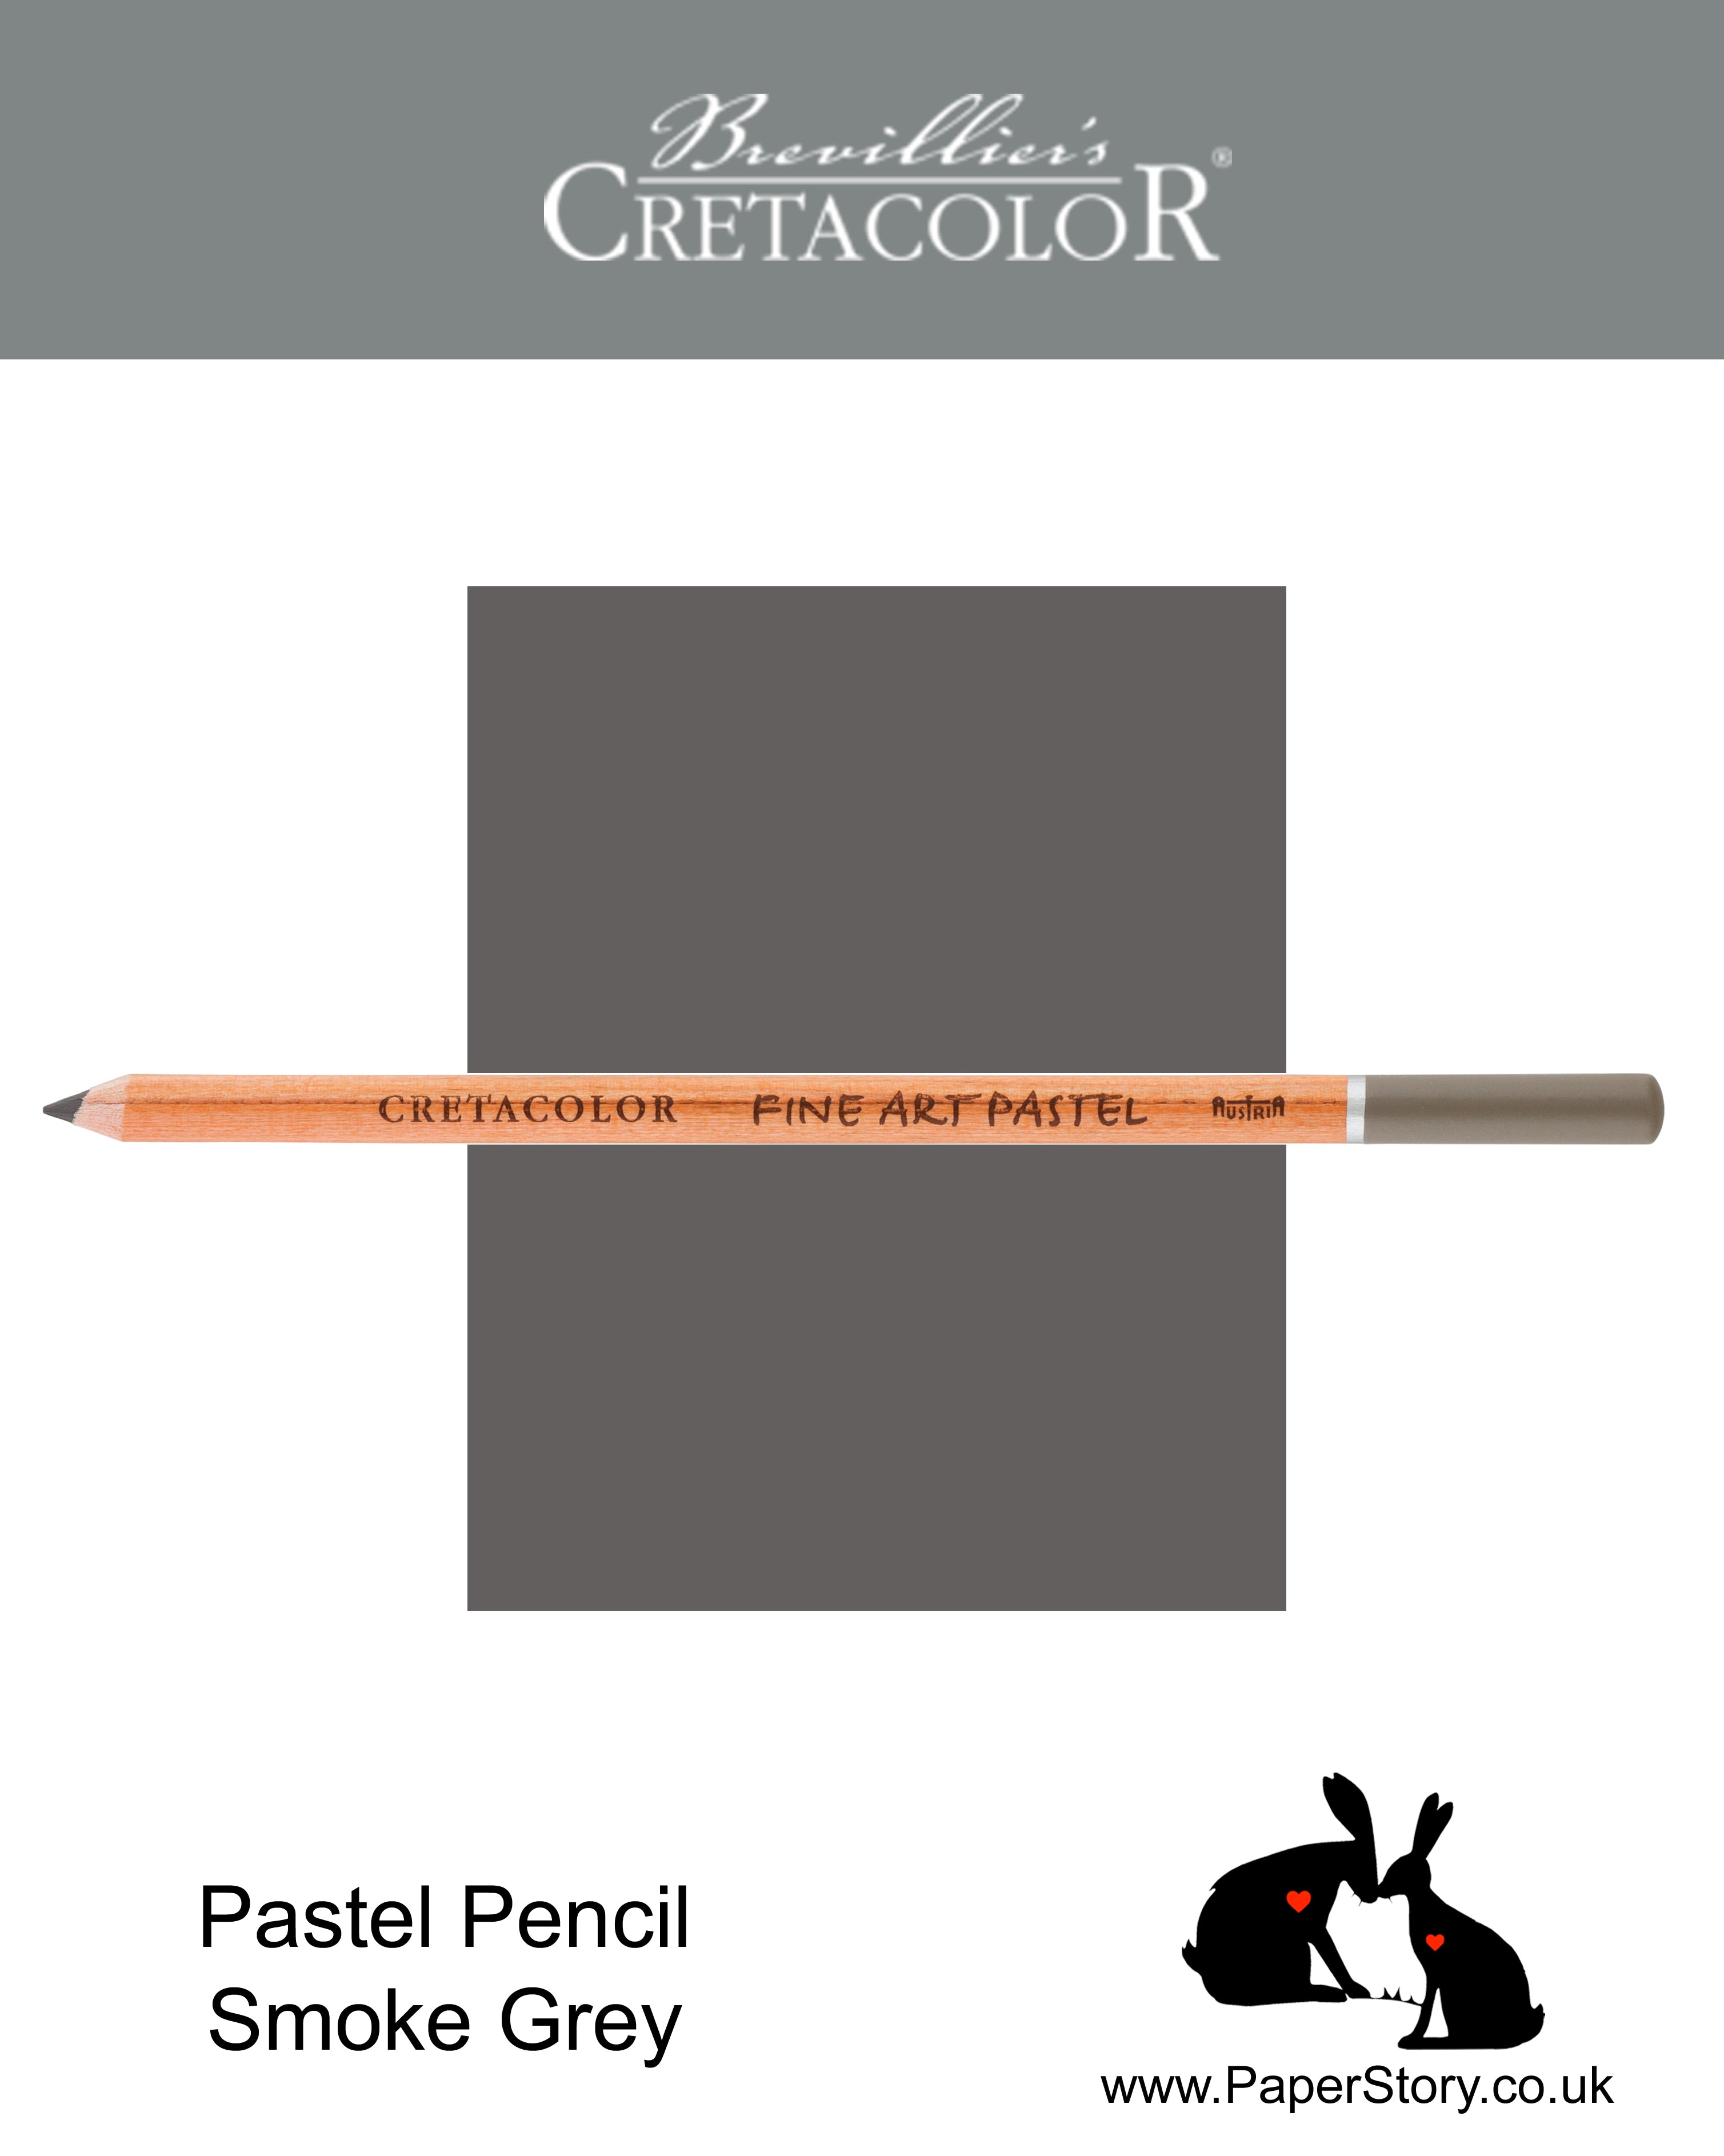 Cretacolor 472 28 Artists Pastel Pencil Smoke Grey